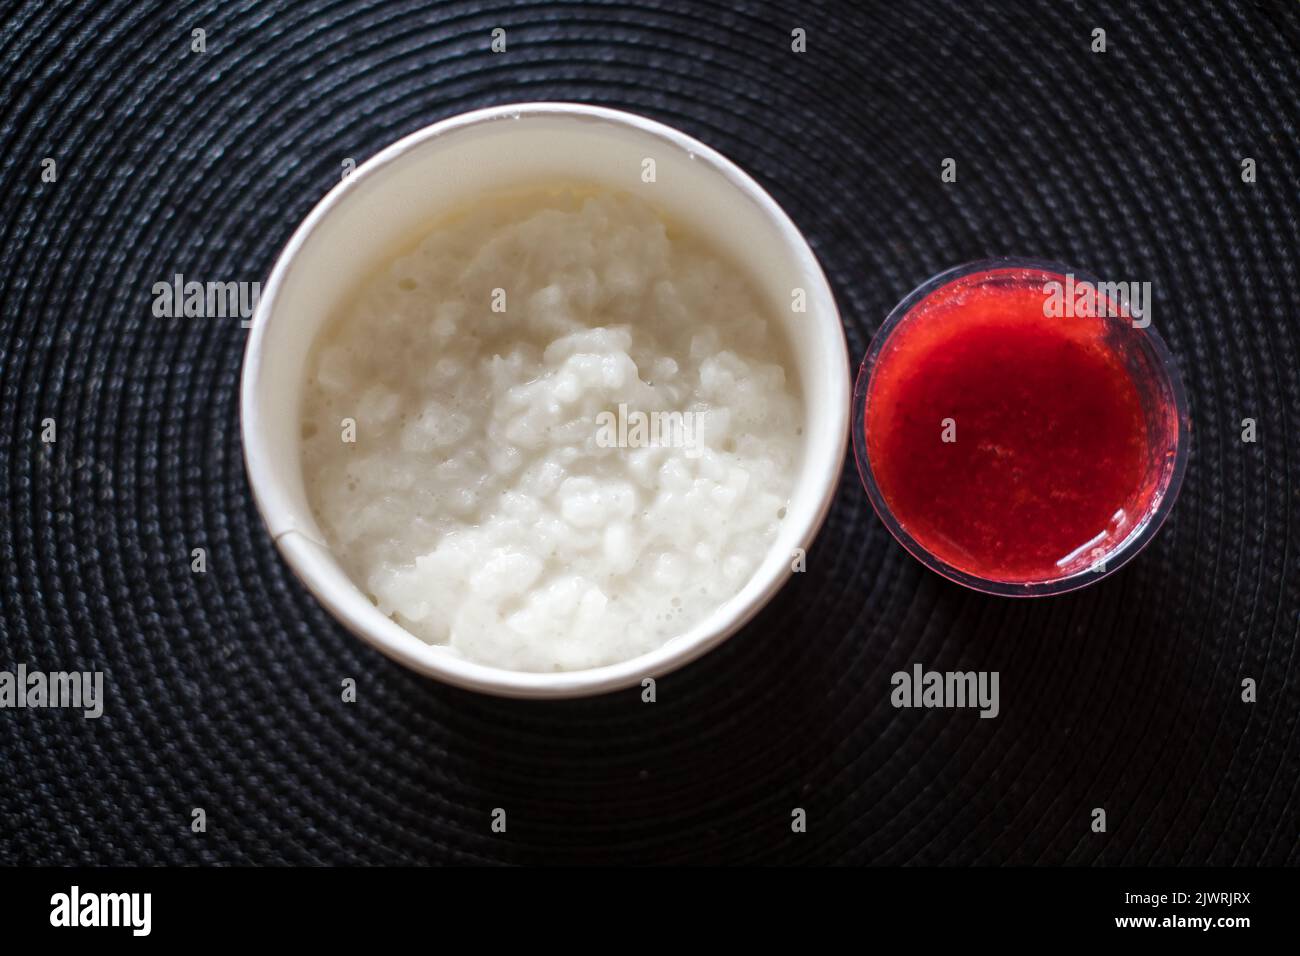 Rice flake porridge in a white round carton take-away box with fresh strawberry jam. Stock Photo